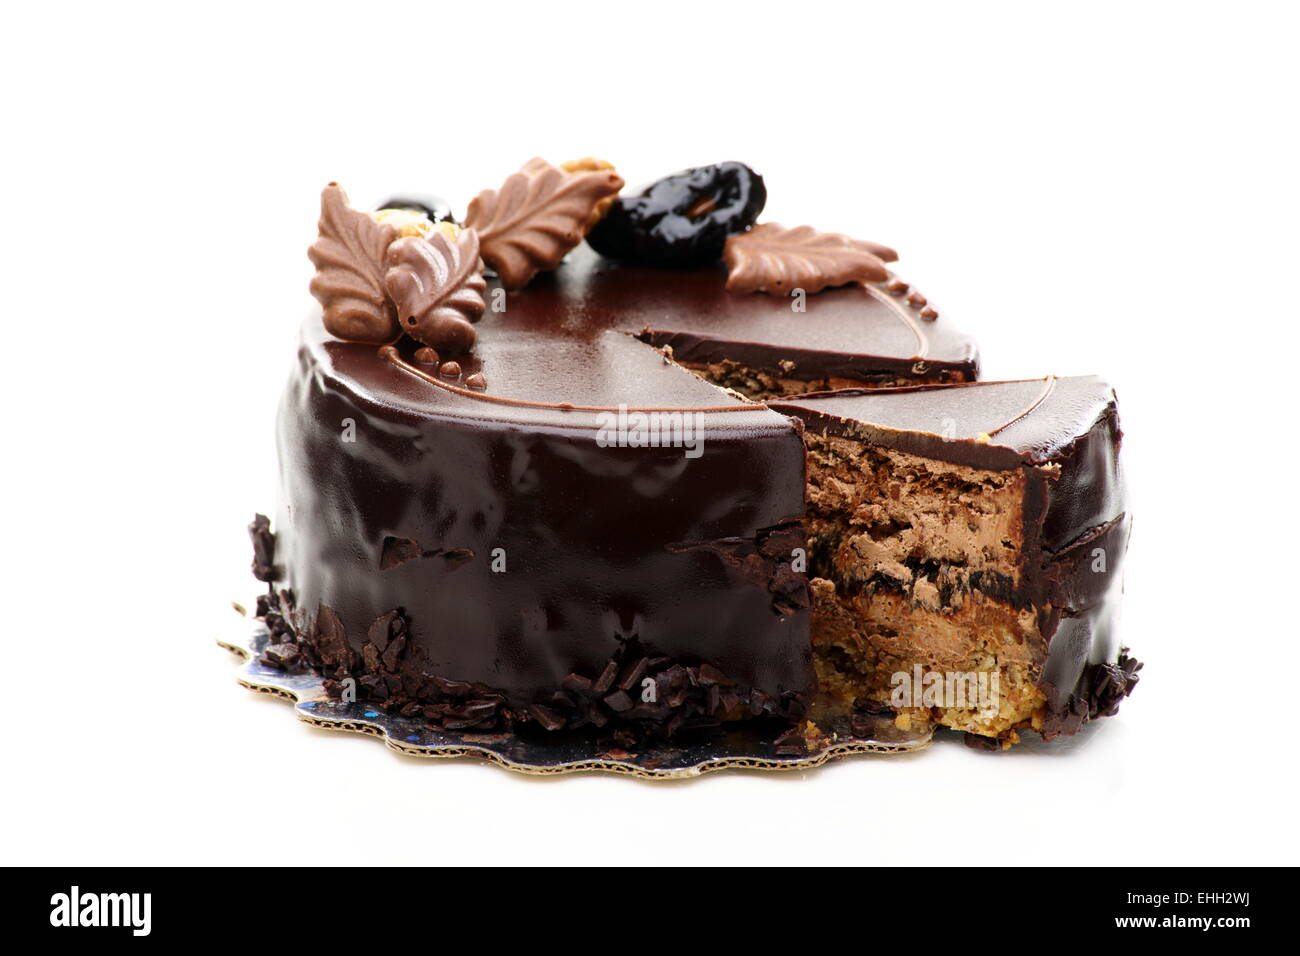 Gâteau au chocolat aux noix et pruneaux. Banque D'Images